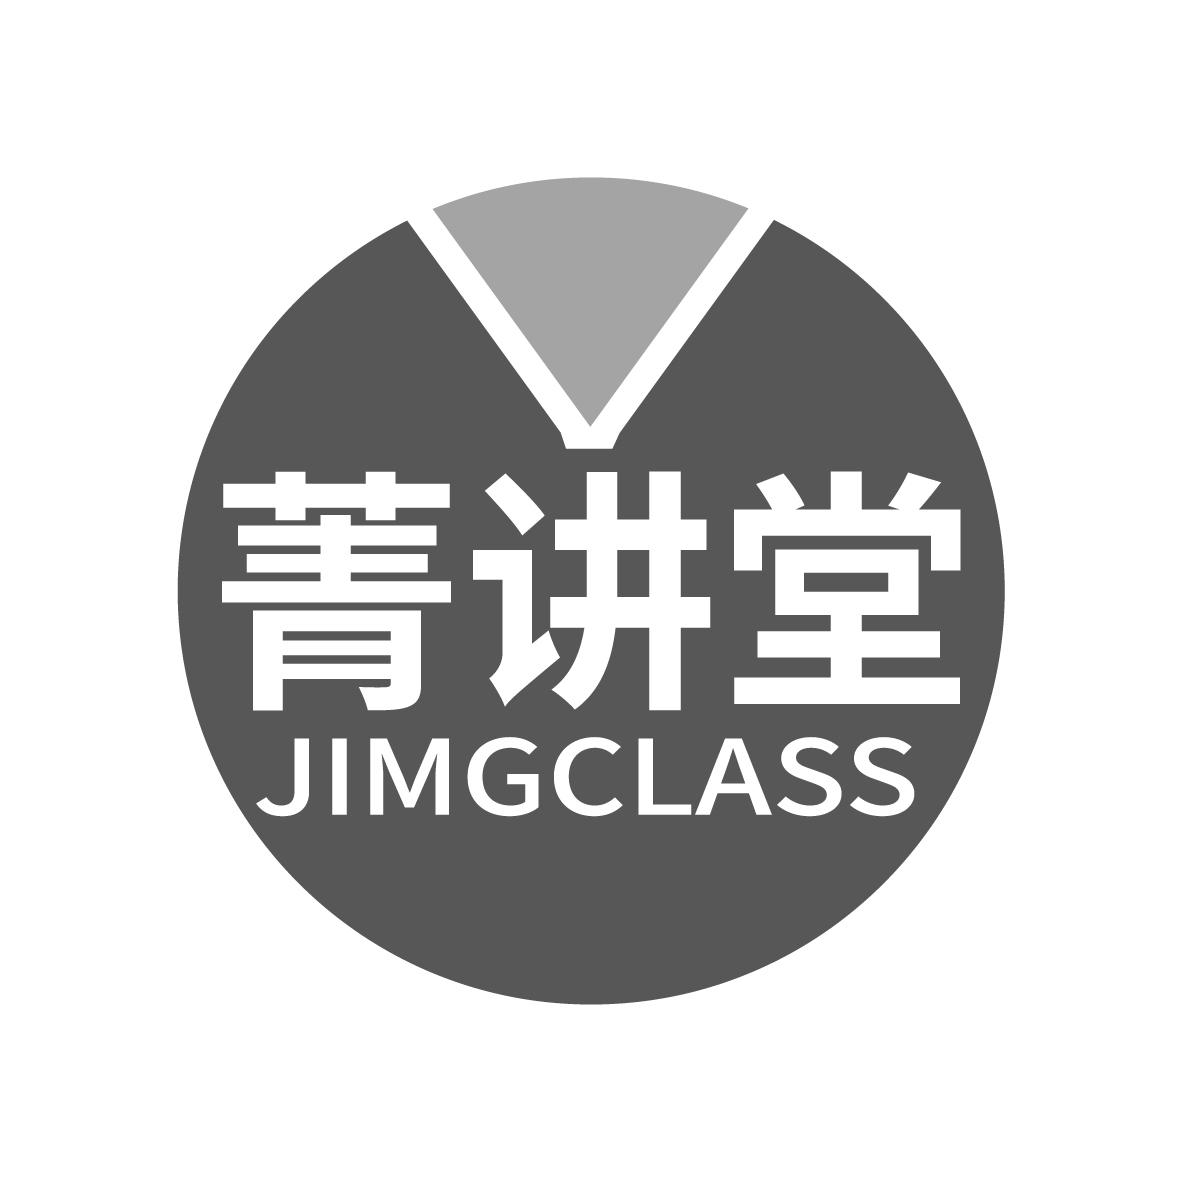 菁讲堂 JIMGCLASS